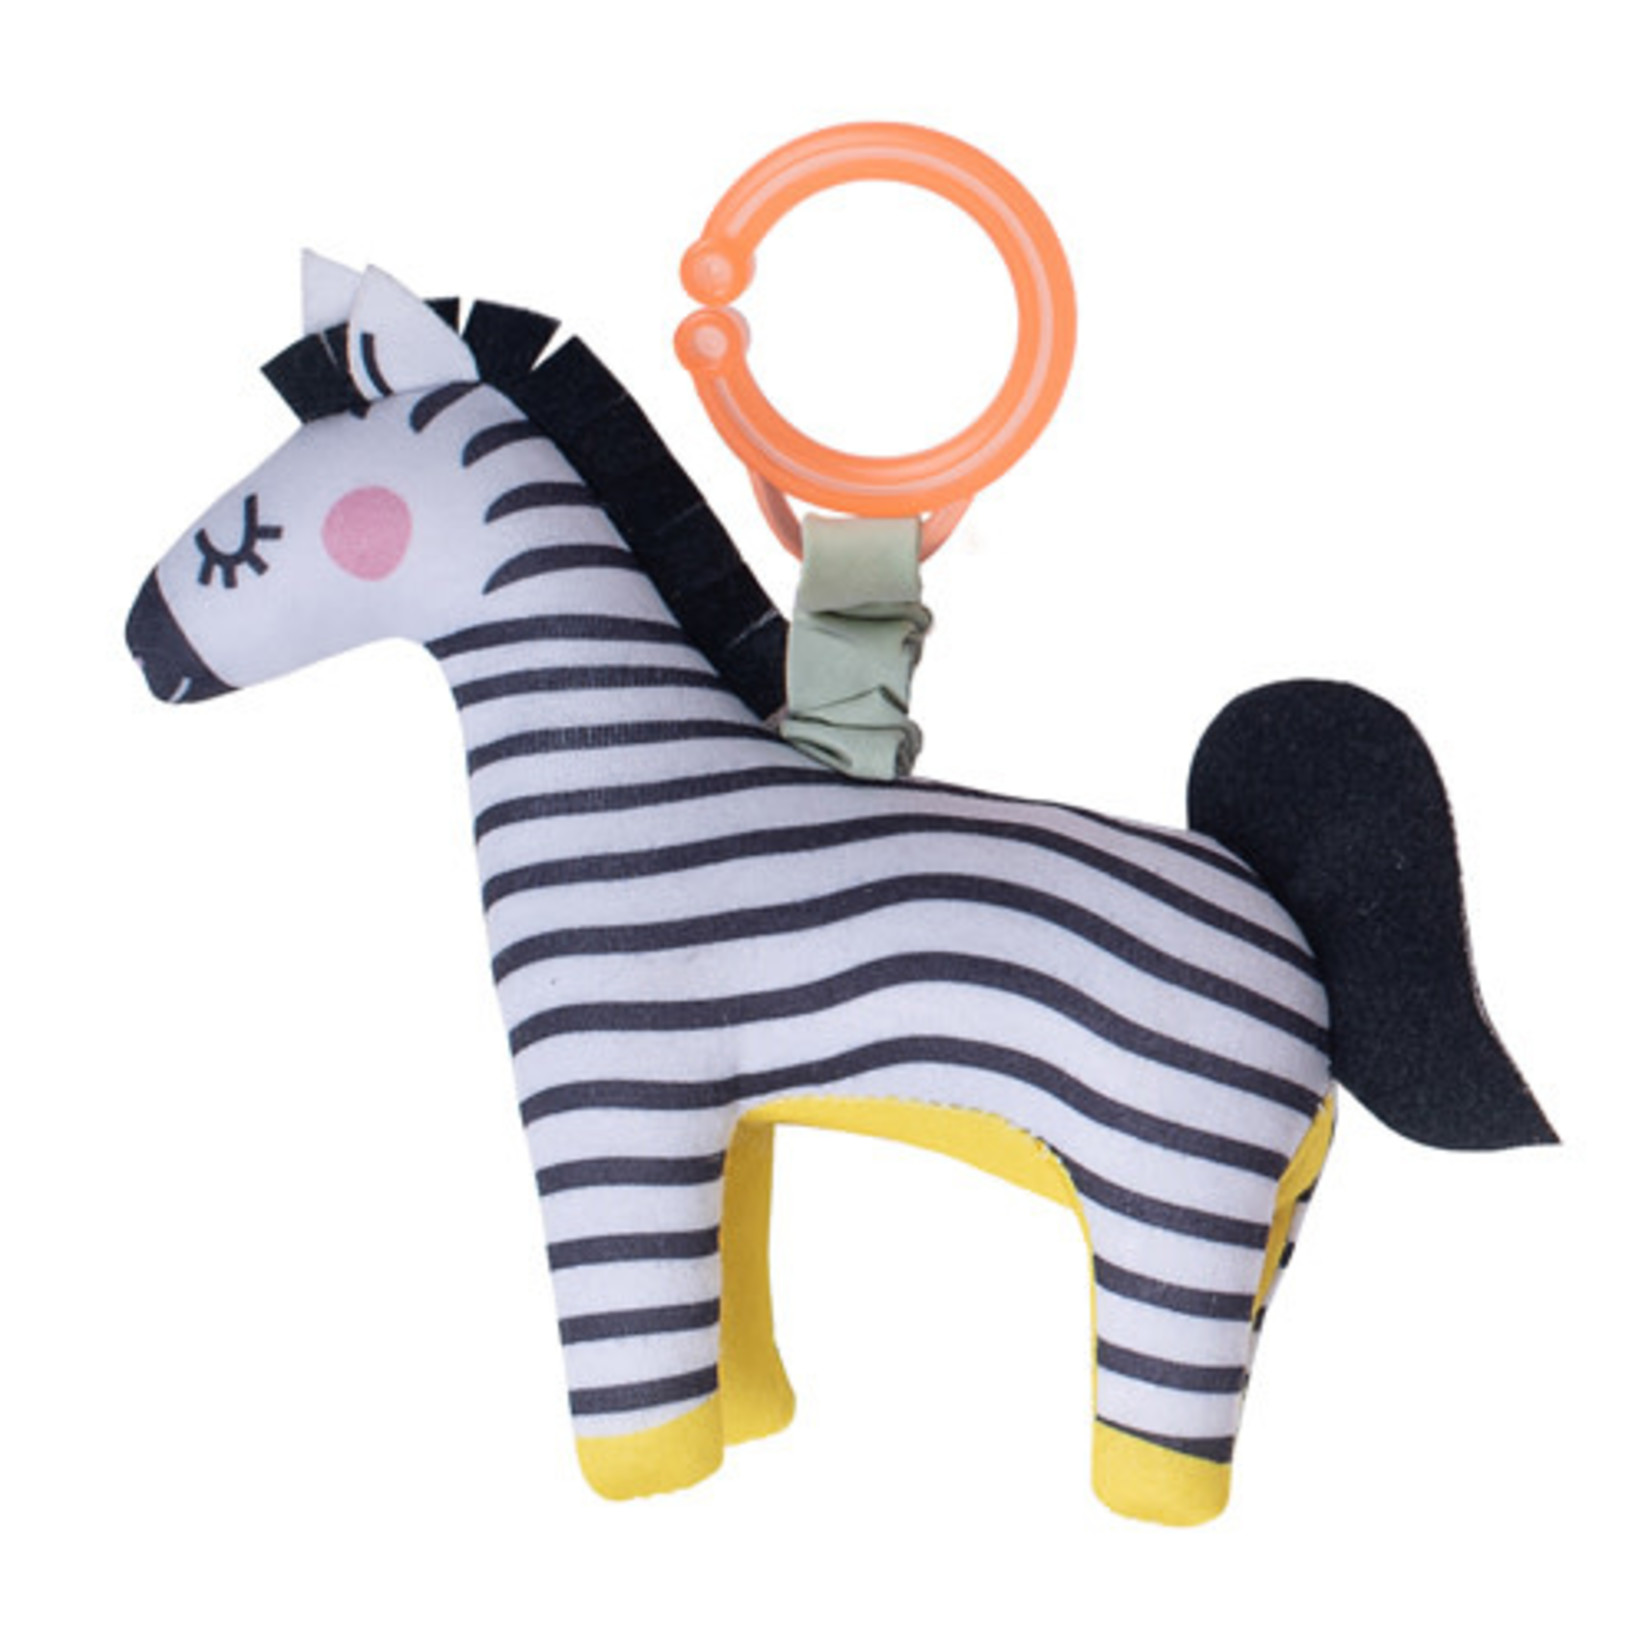 Taf Toys Rattle Dizi the Zebra